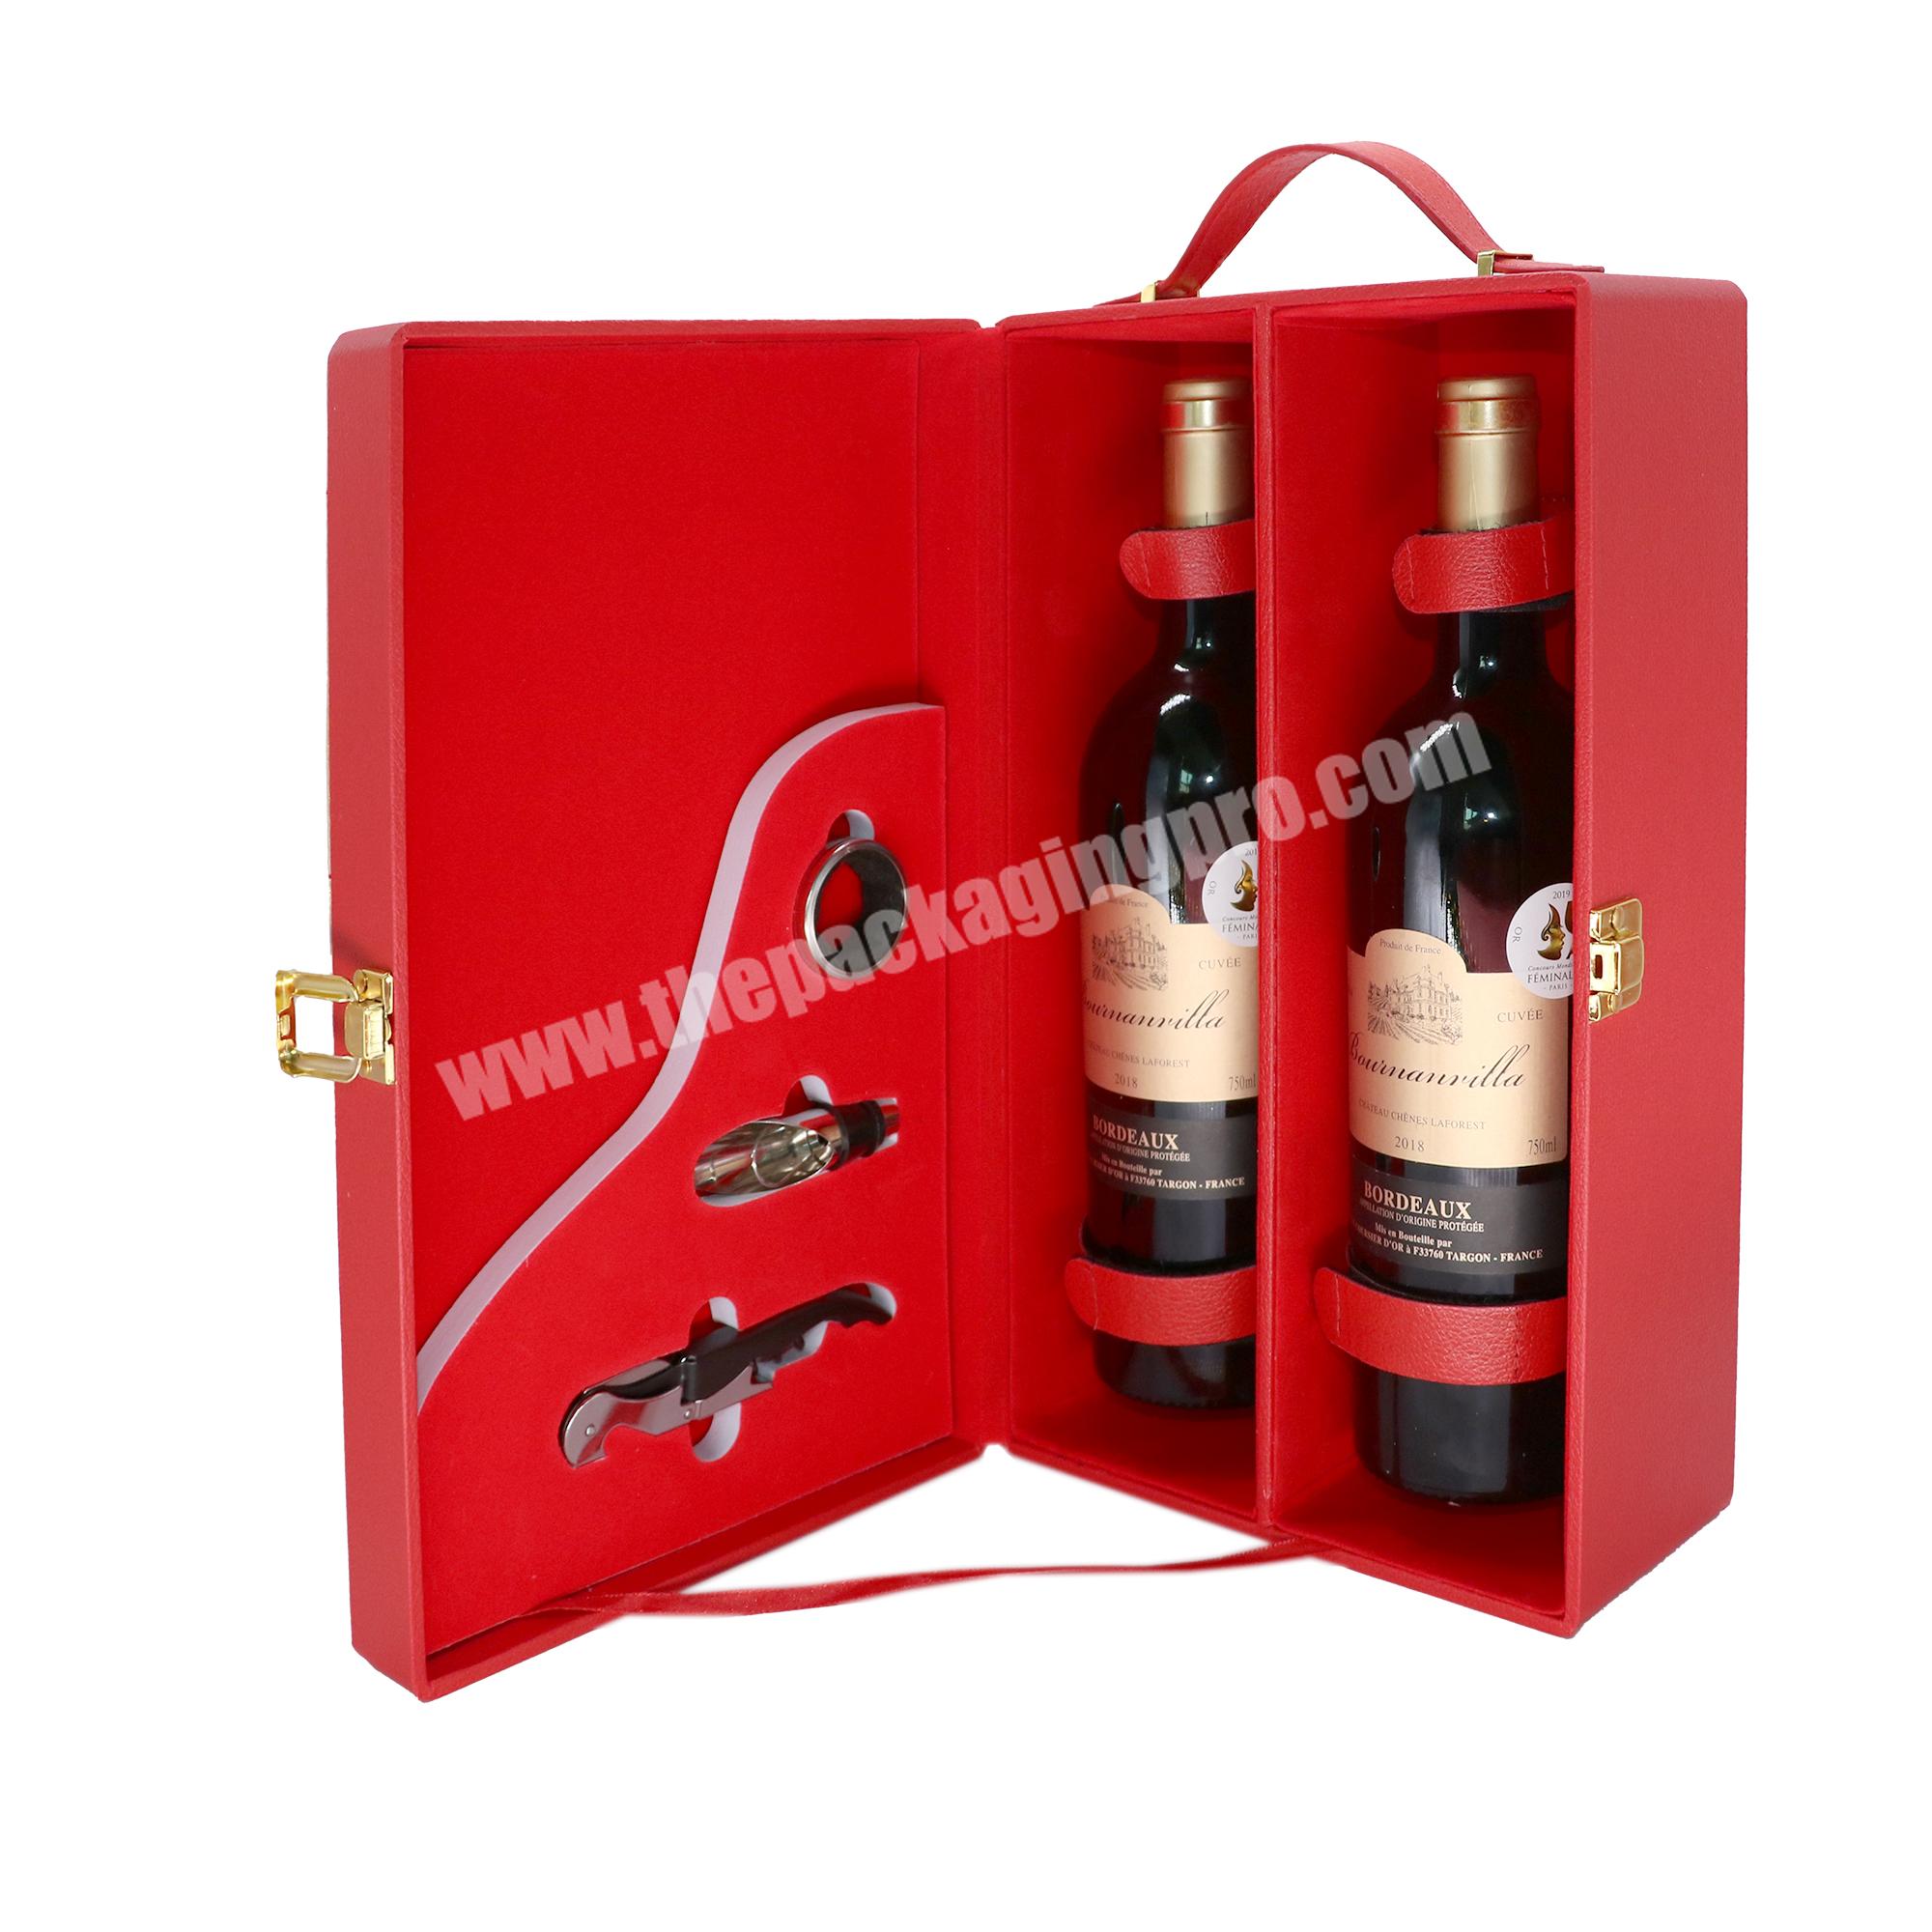 Custom box wine luxury 2 bottles of wine gift box set wine accessories gift box